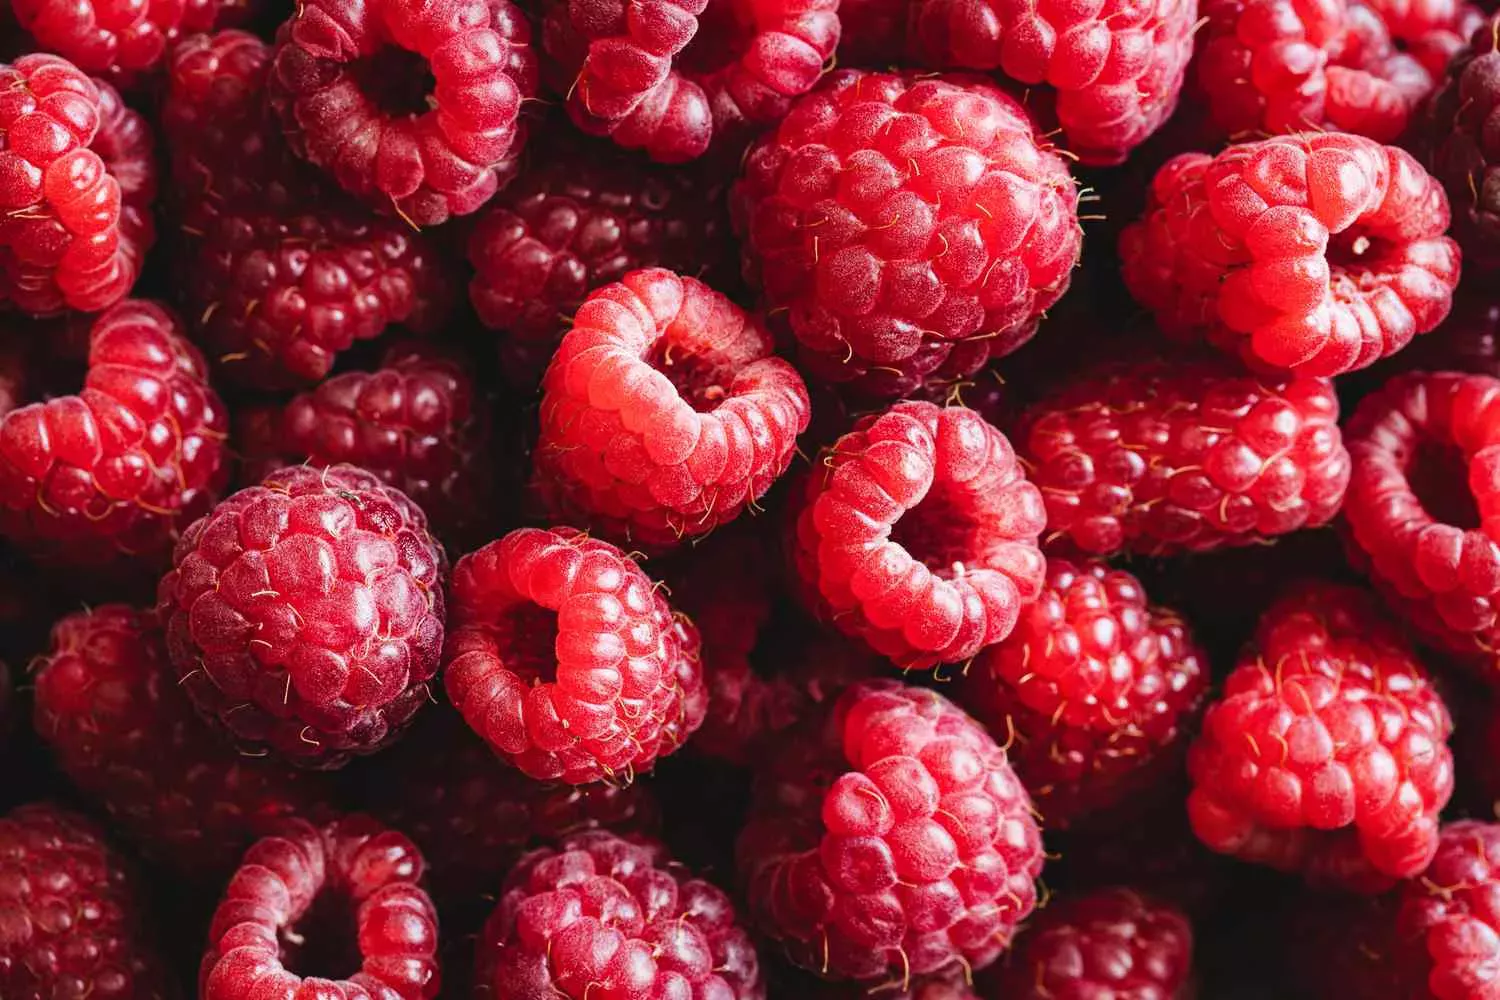 17 frutas ricas en fibra para añadir a su dieta, según un dietista